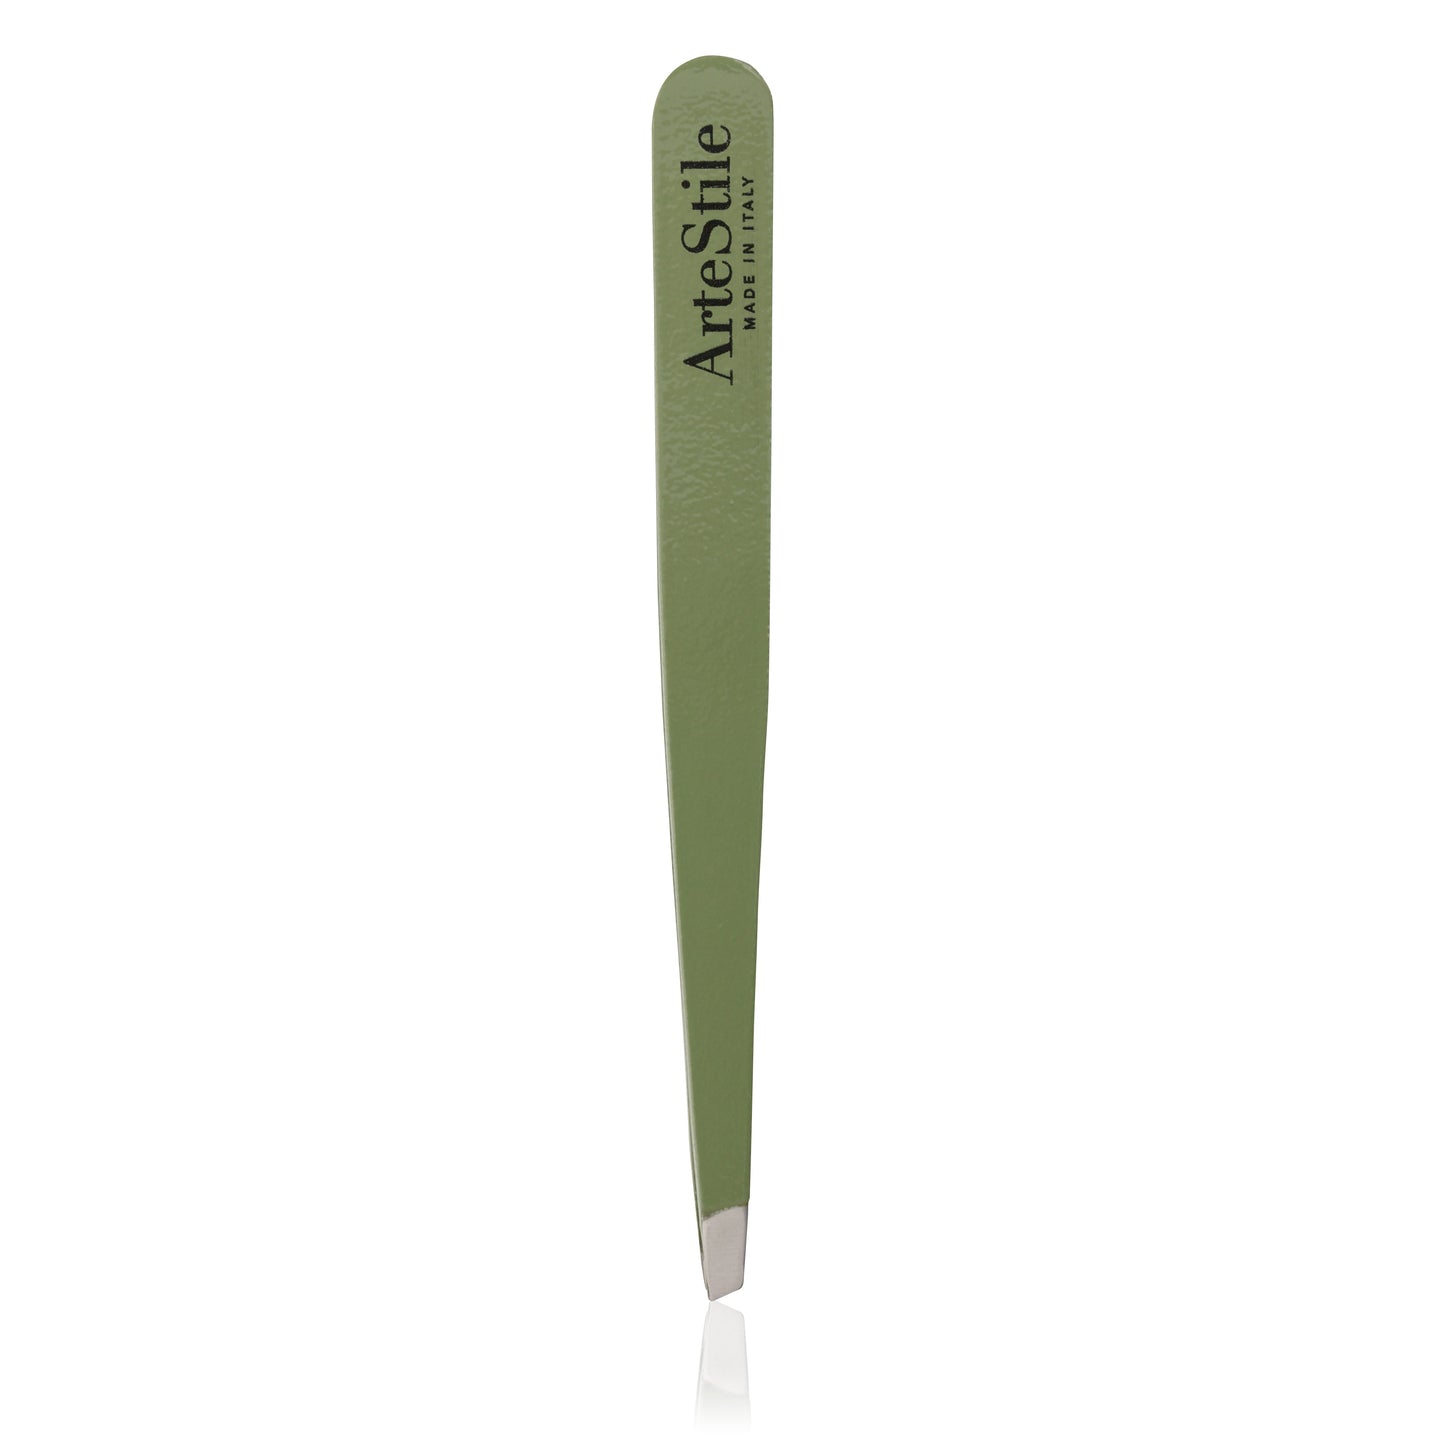 Slant Tip Tweezers + Brow Scissors Kit in Olive